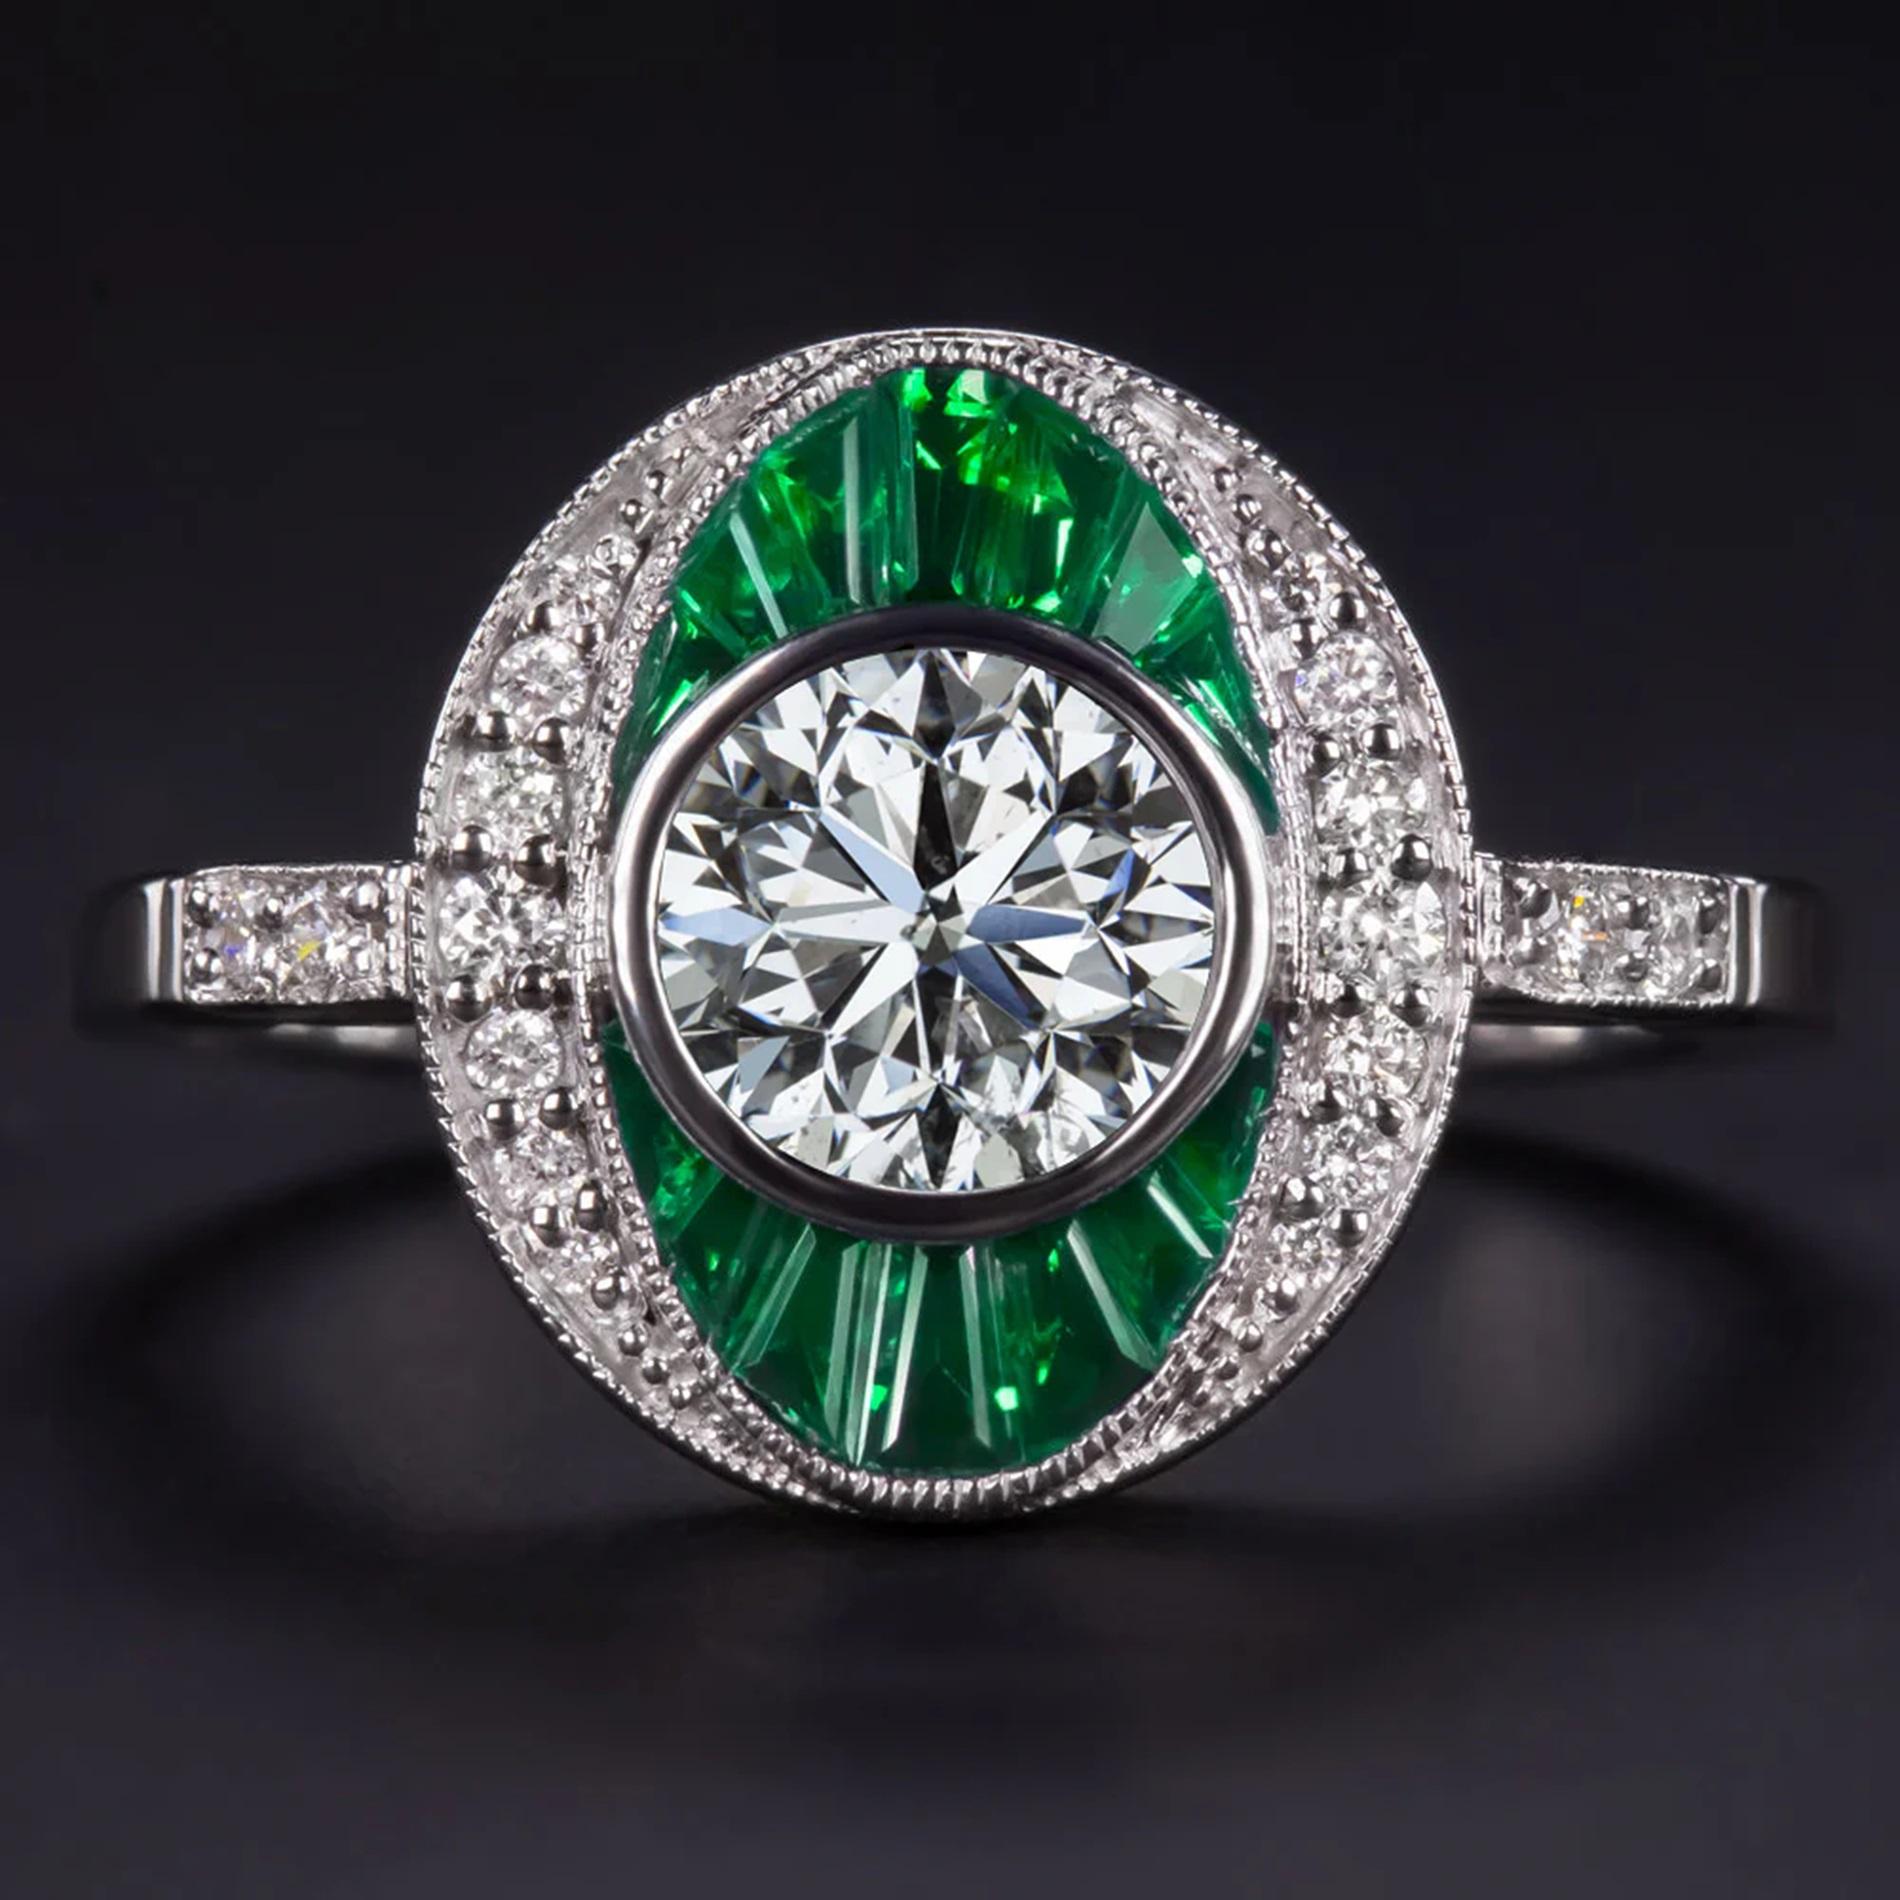 Entdecken Sie zeitlose Eleganz mit diesem atemberaubenden, vom Art Deco inspirierten Diamant- und Smaragdring, der durch seine satte Farbe und sein außergewöhnliches Funkeln besticht! Der Ring ist mit einem hochwertigen Diamanten im Rundschliff